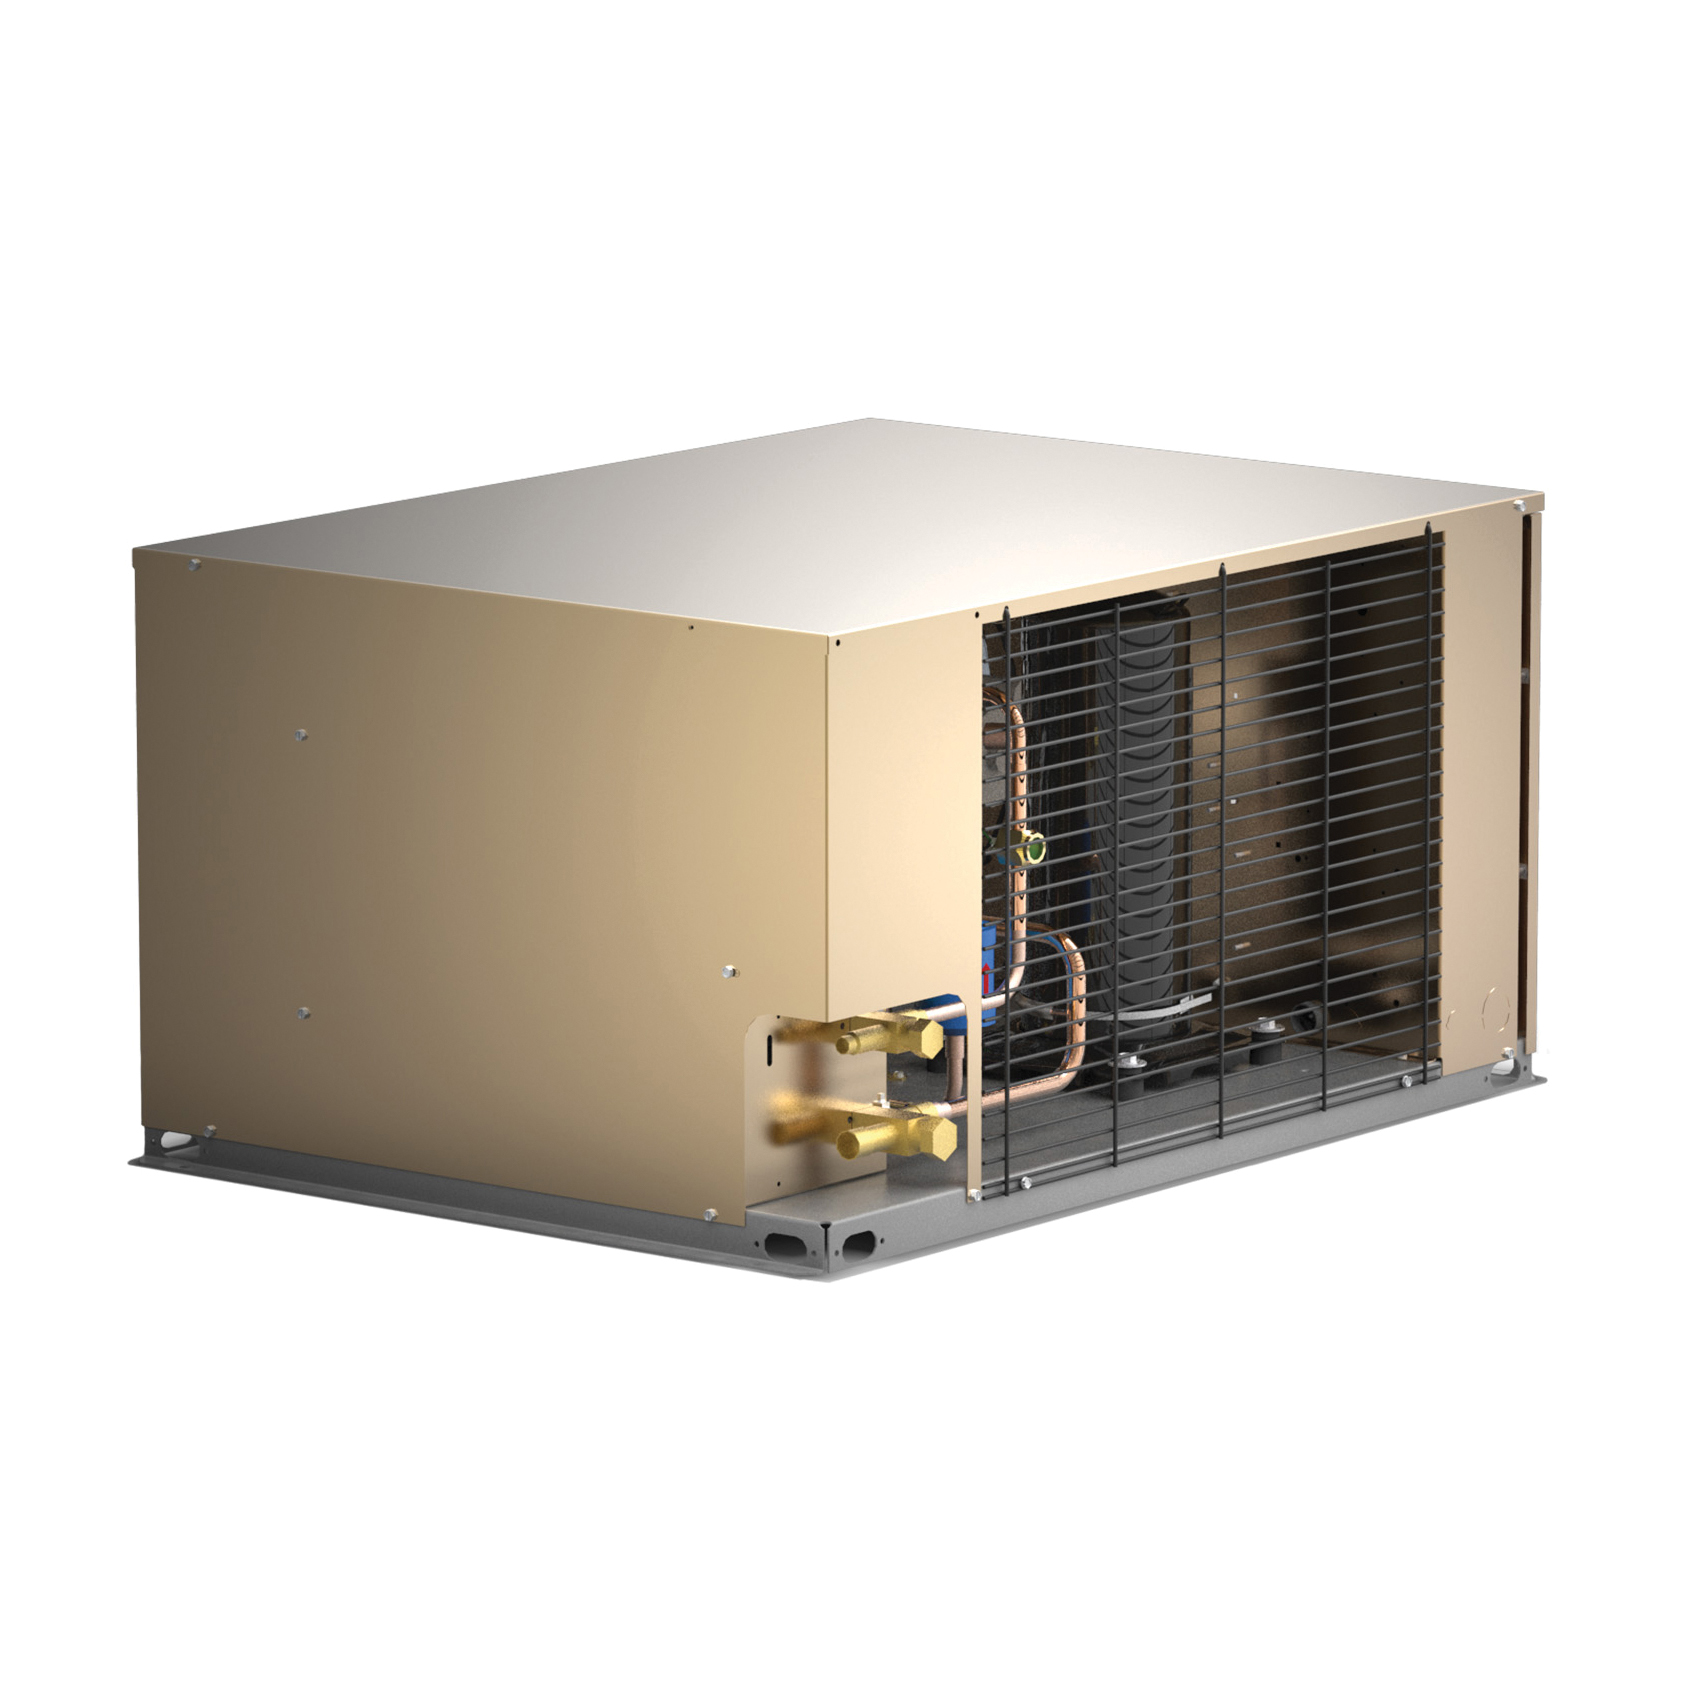 Larkin LCH0010MCACZ.A0000 Air Cooled Condensing Unit, 208 to 230 V, 15 A, 12200 Btu/hr, R-404A Refrigerant